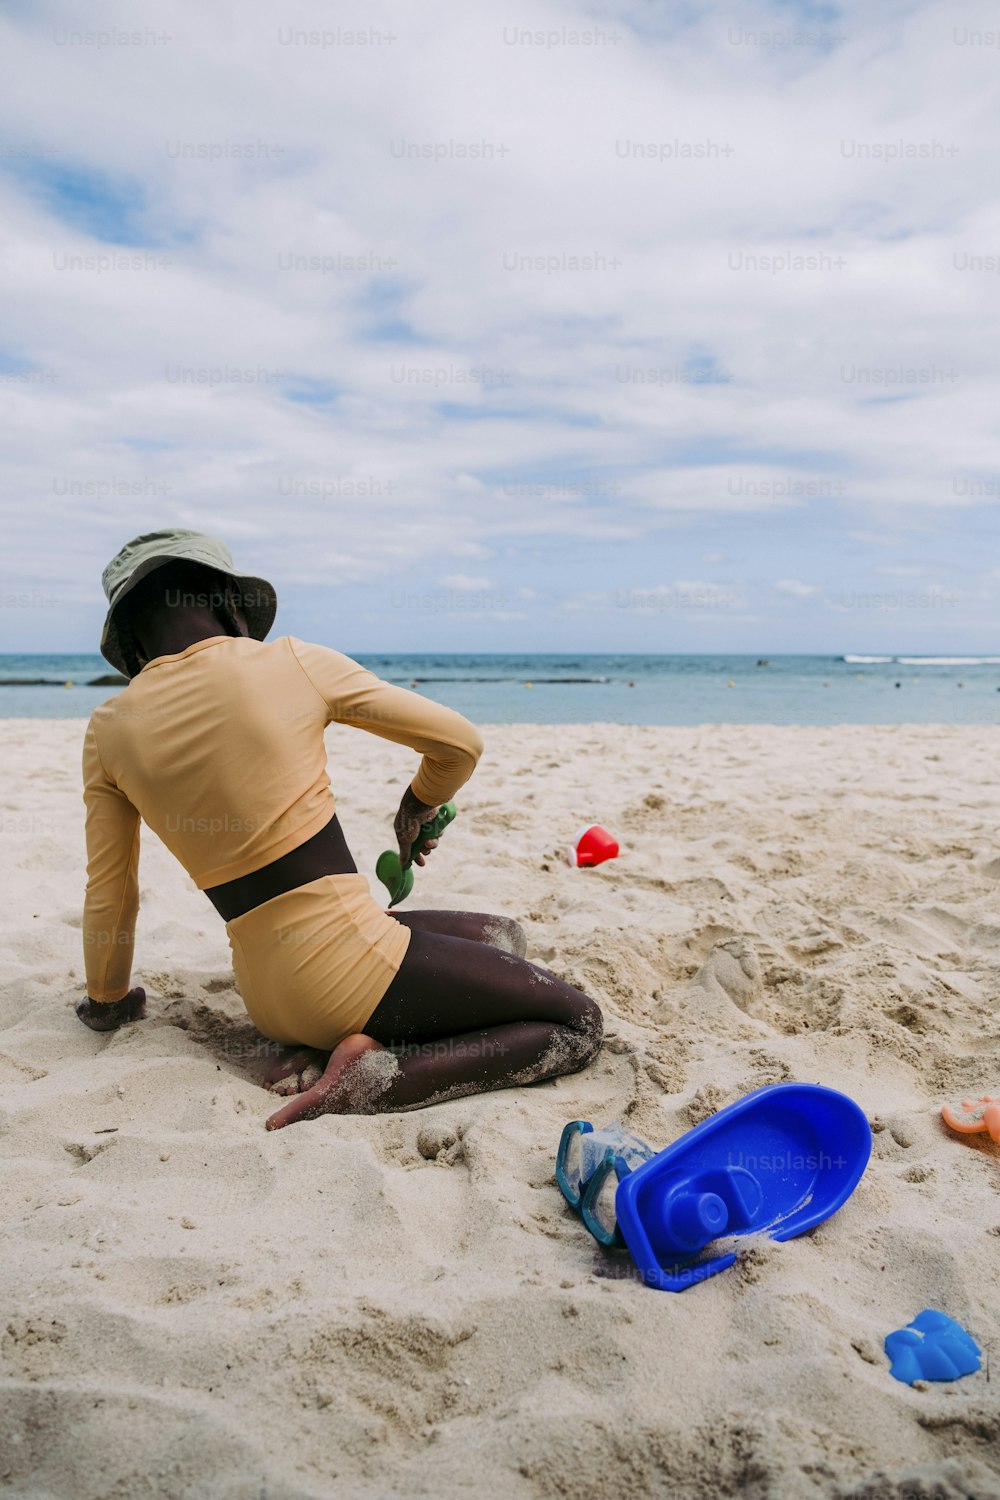 Una mujer sentada en una playa junto a un frisbee azul